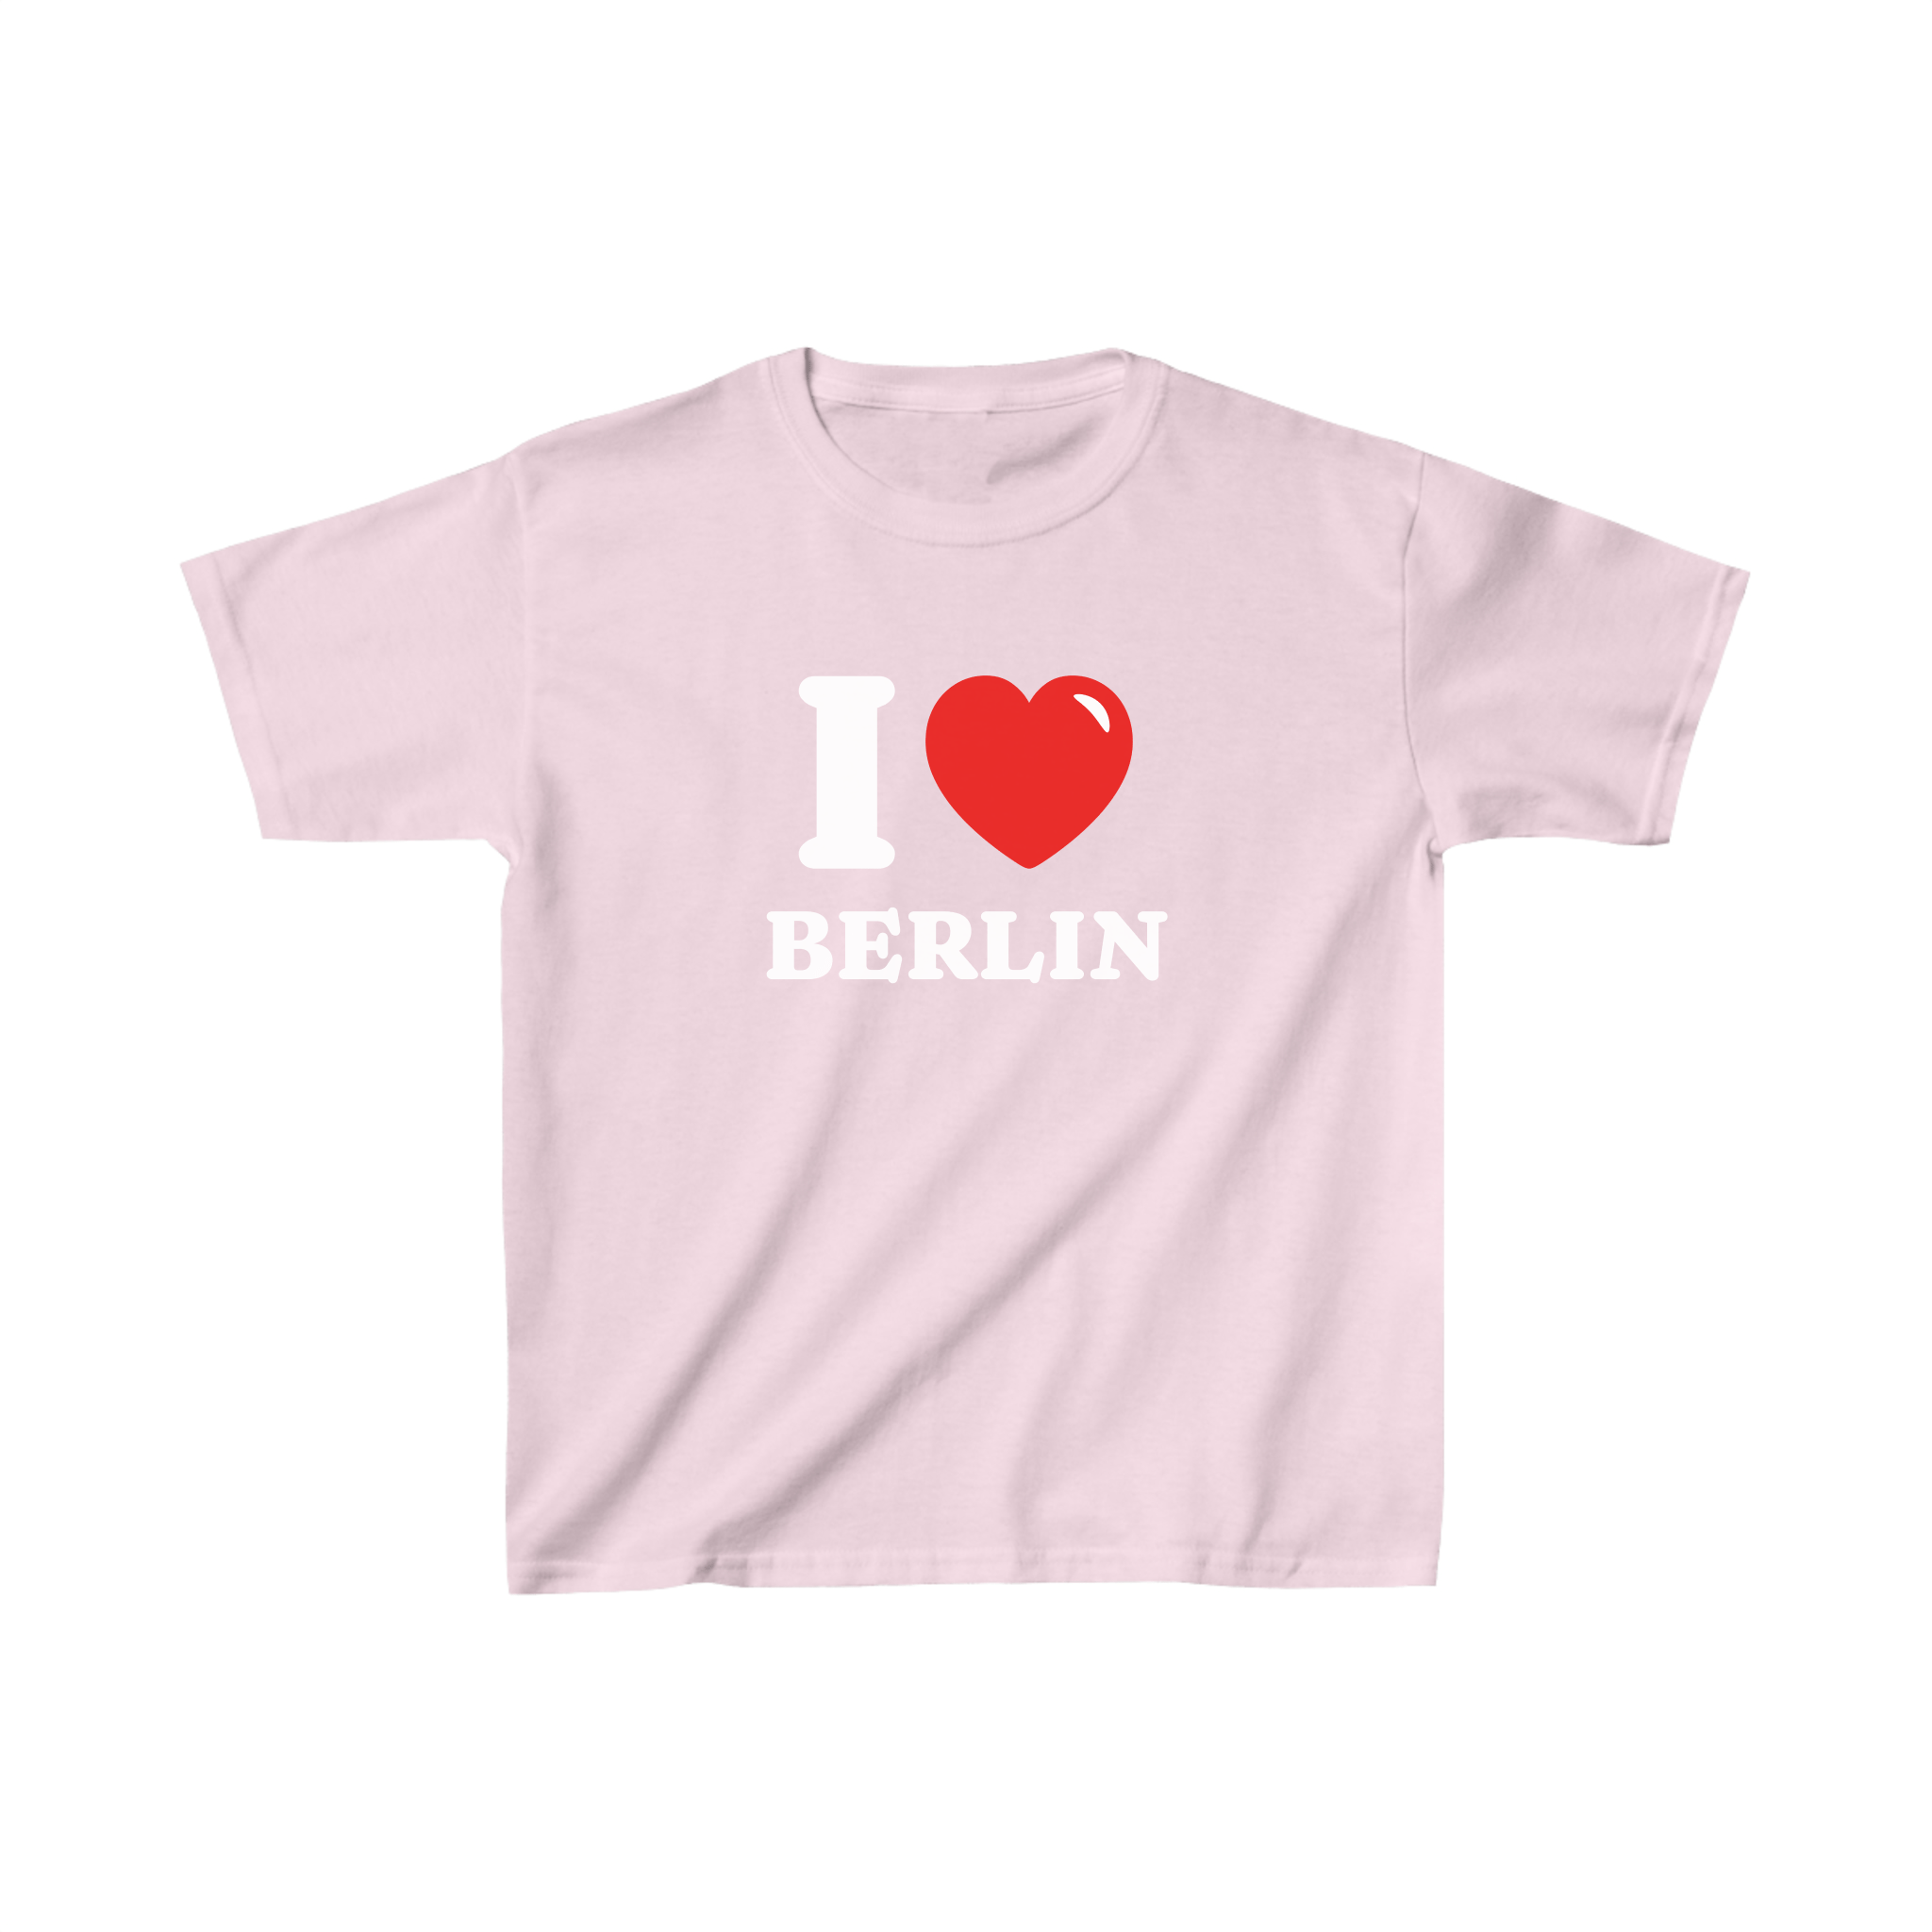 'I love Berlin' baby tee - In Print We Trust